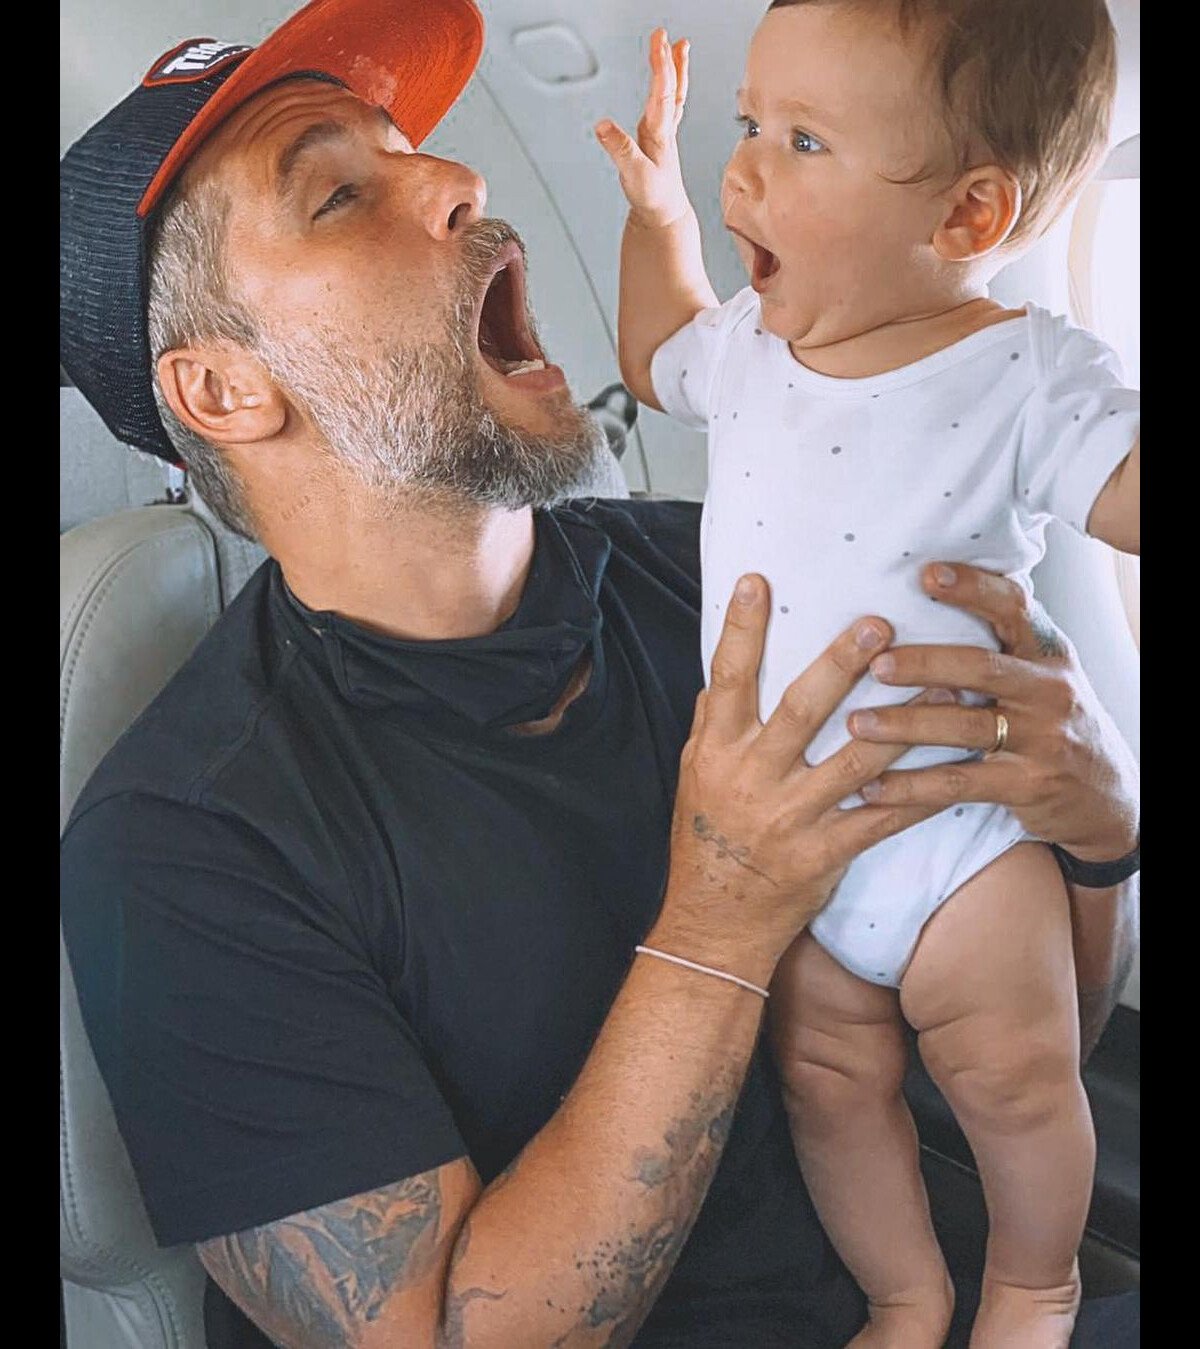 Foto: Filho bebê de Bruno Gagliasso faz careta em viagem e ator imita:  'Acha graça' - Purepeople